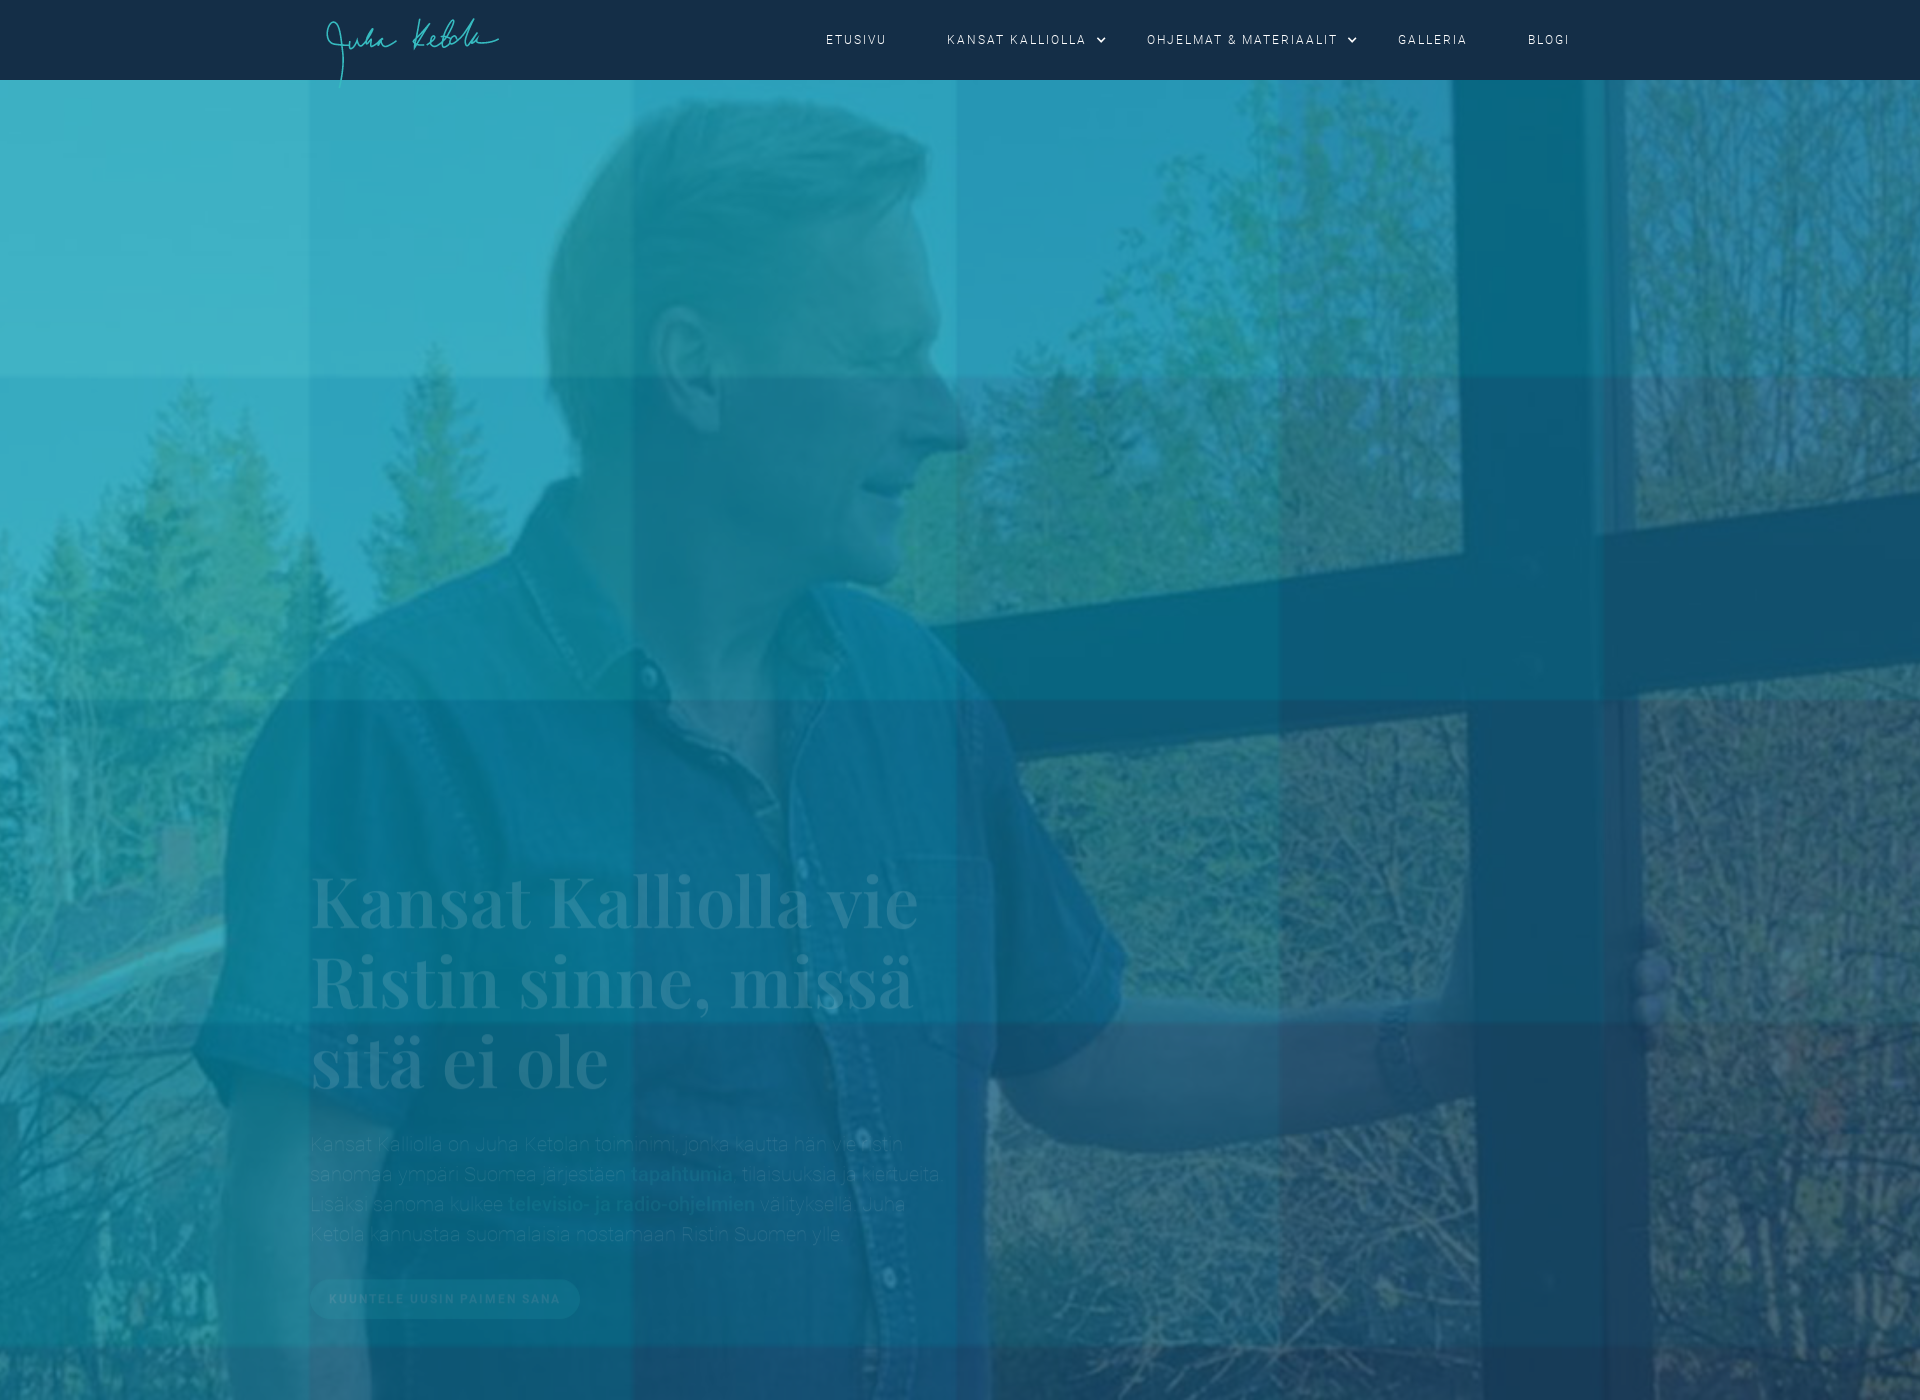 Näyttökuva kansatkalliolla.fi